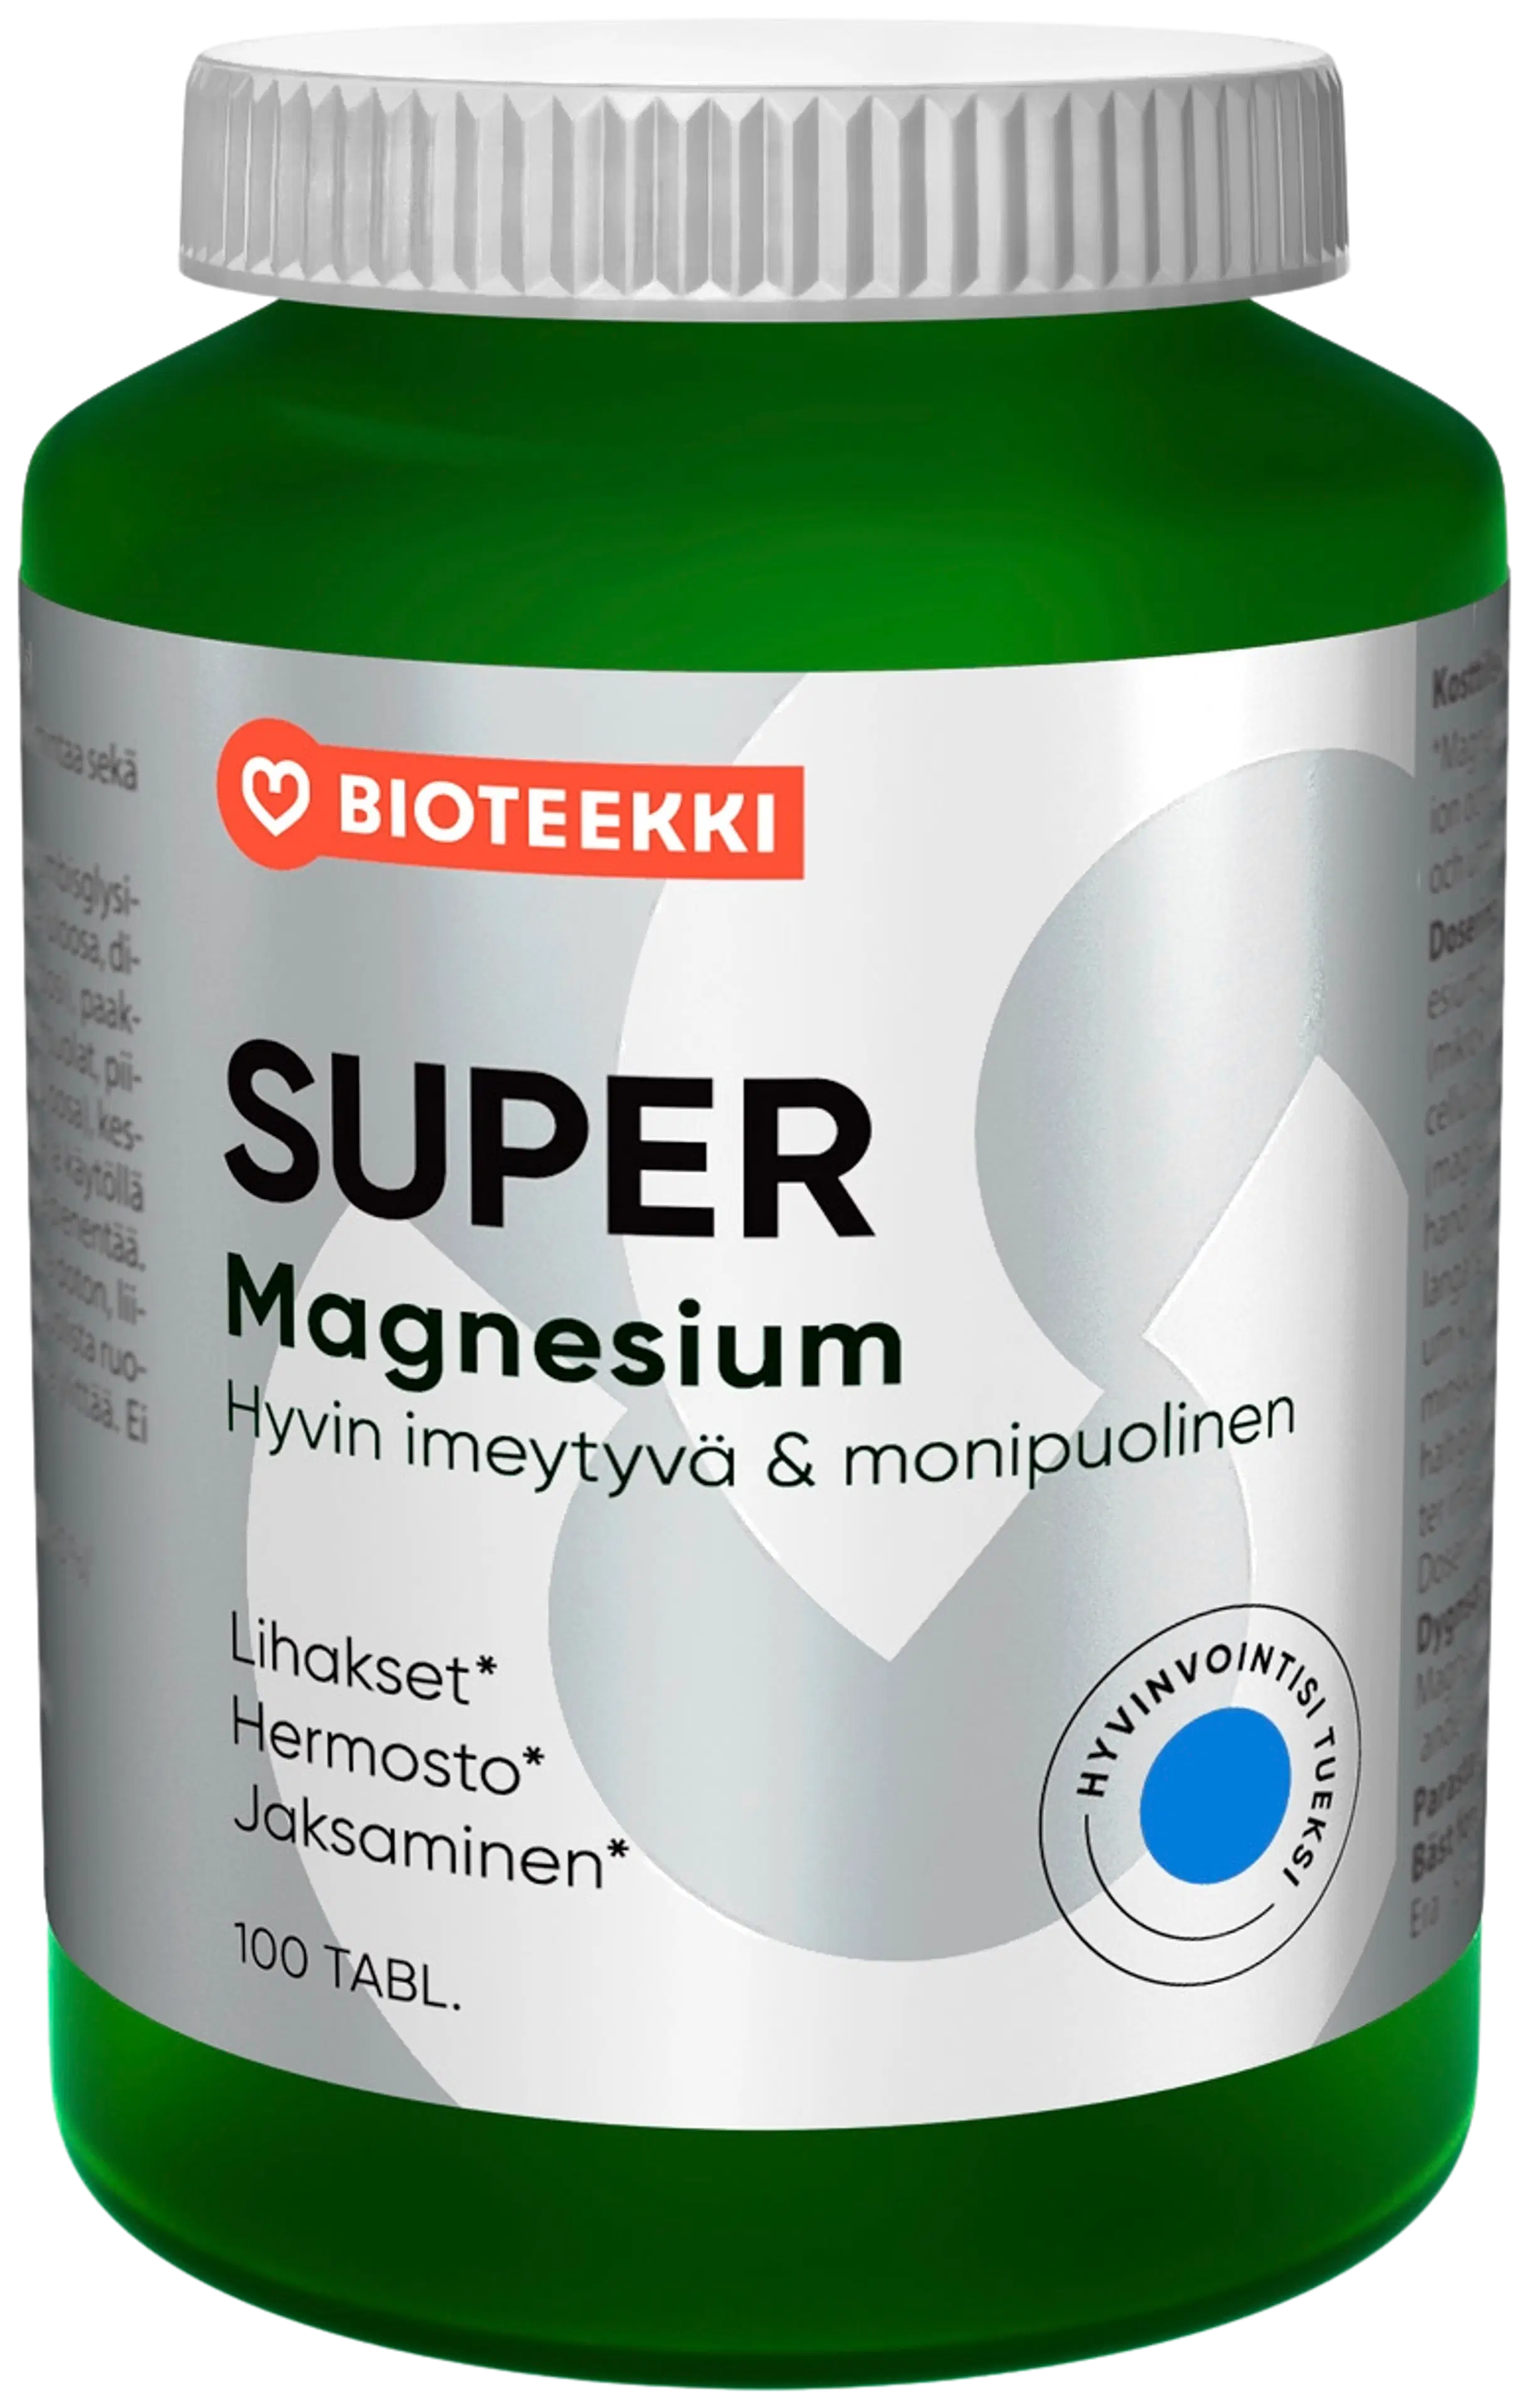 Bioteekki Super Magnesium ravintolisä 100 tabl.